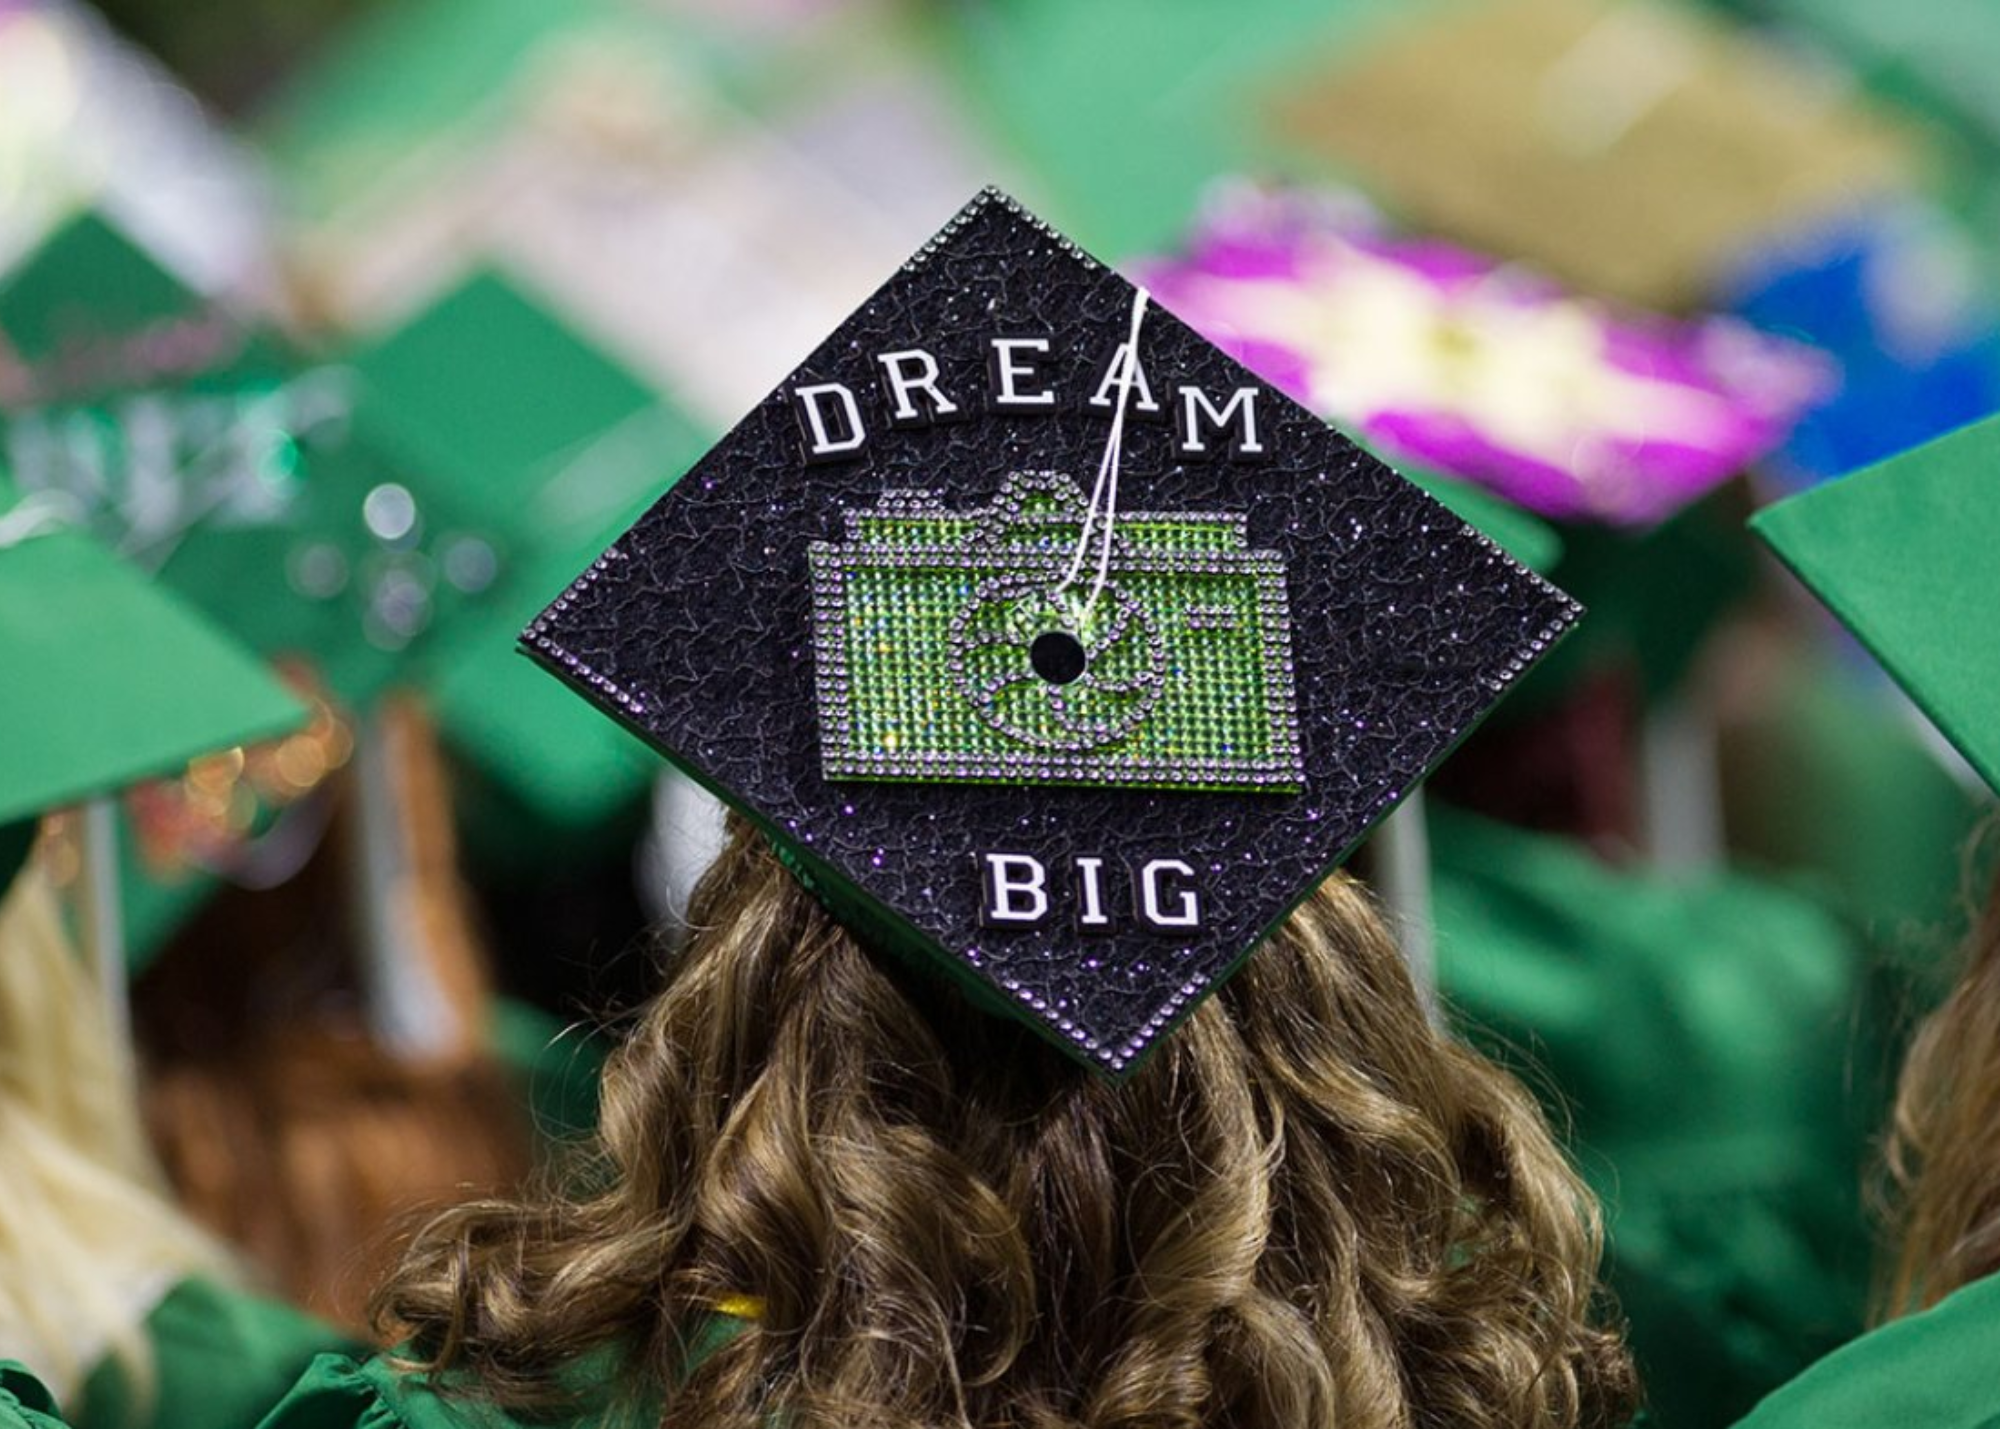 Students in graduation UNT graduation regalia. The back of students graduation cap says Dream Big.